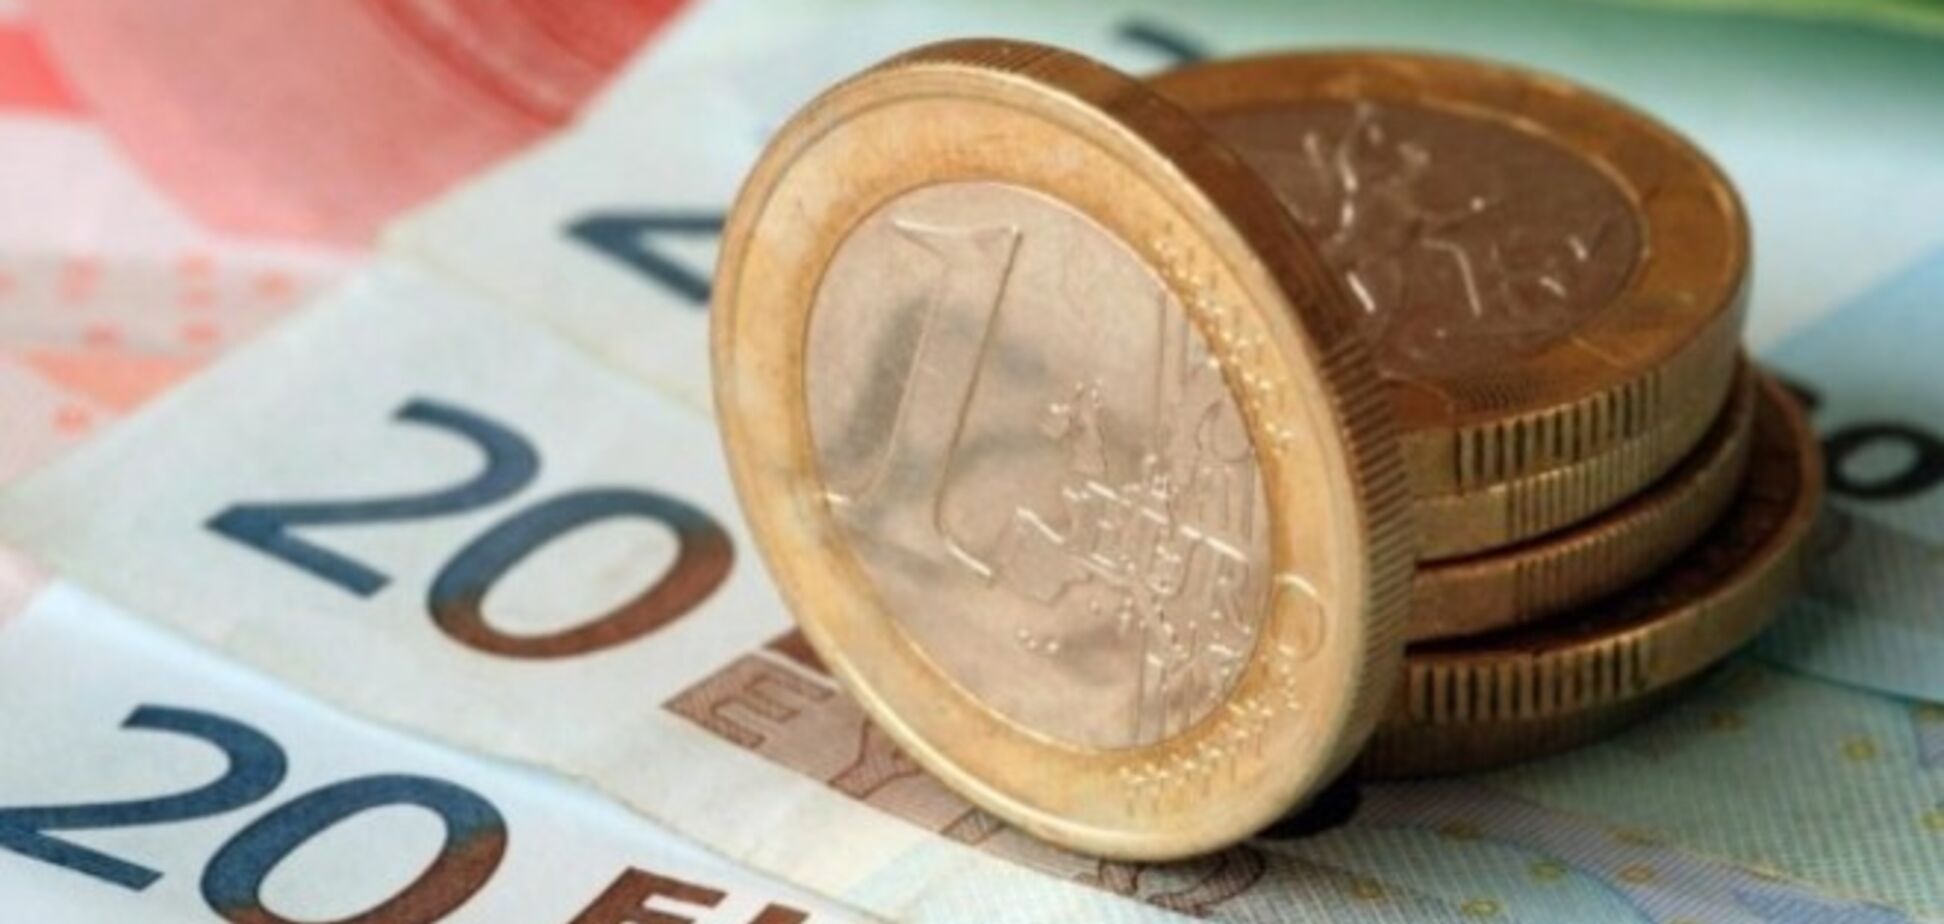 Зато Крымнаш. Курс евро впервые в истории России поднялся до 70 рублей